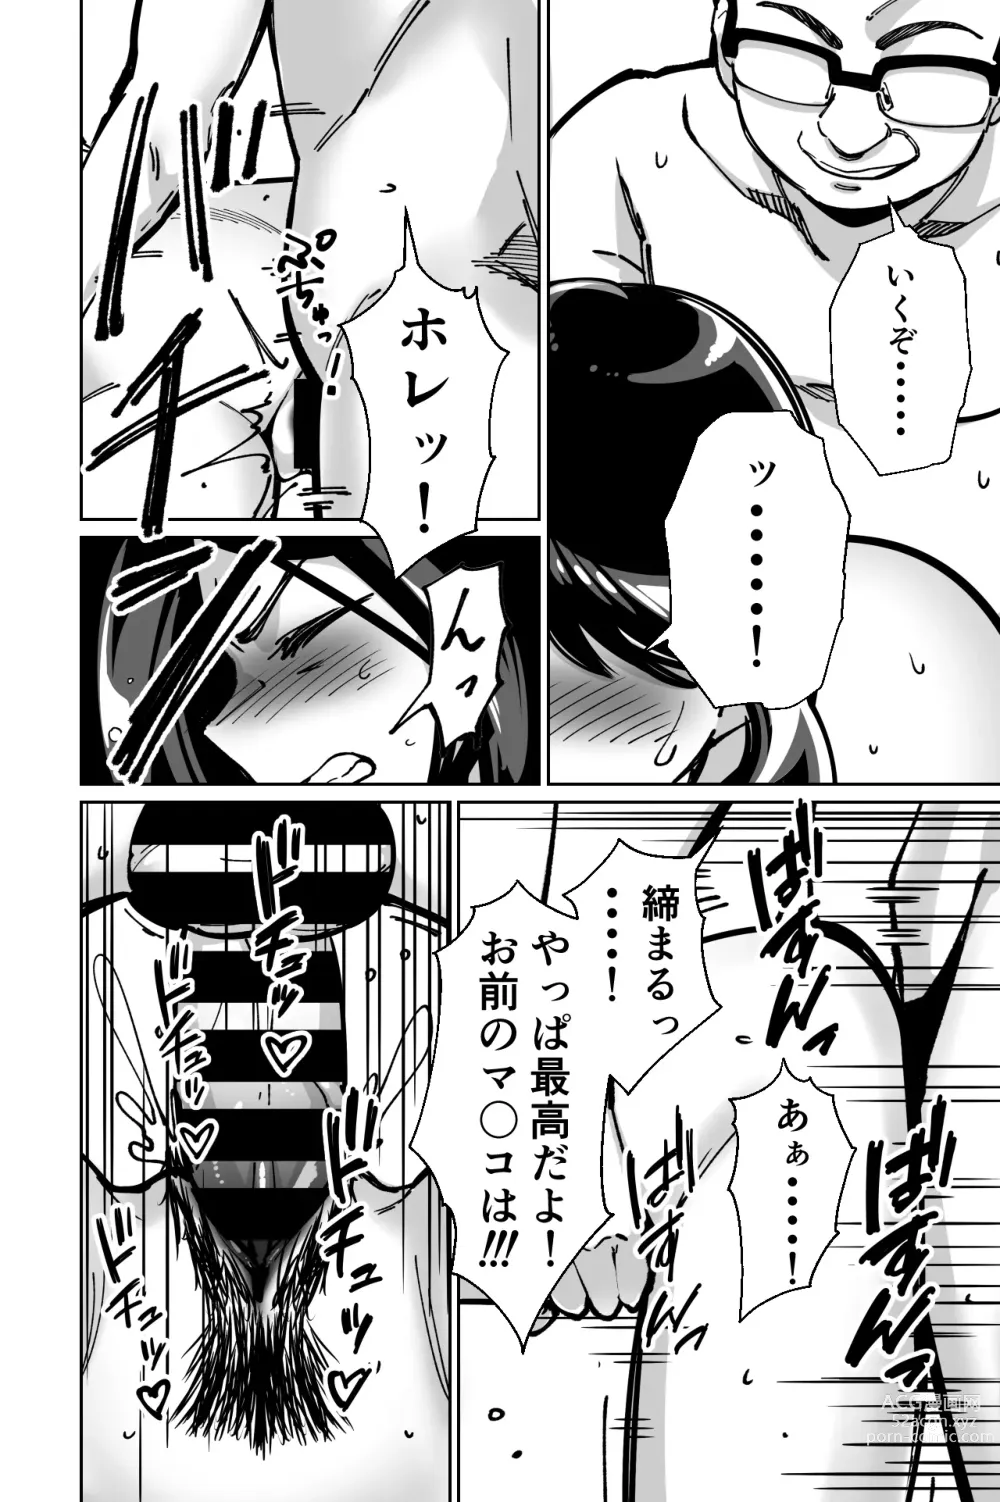 Page 142 of doujinshi Minpaku ~Ojou-sama-tachi wa Minpaku Keieisha no Wana ni Ochiru~